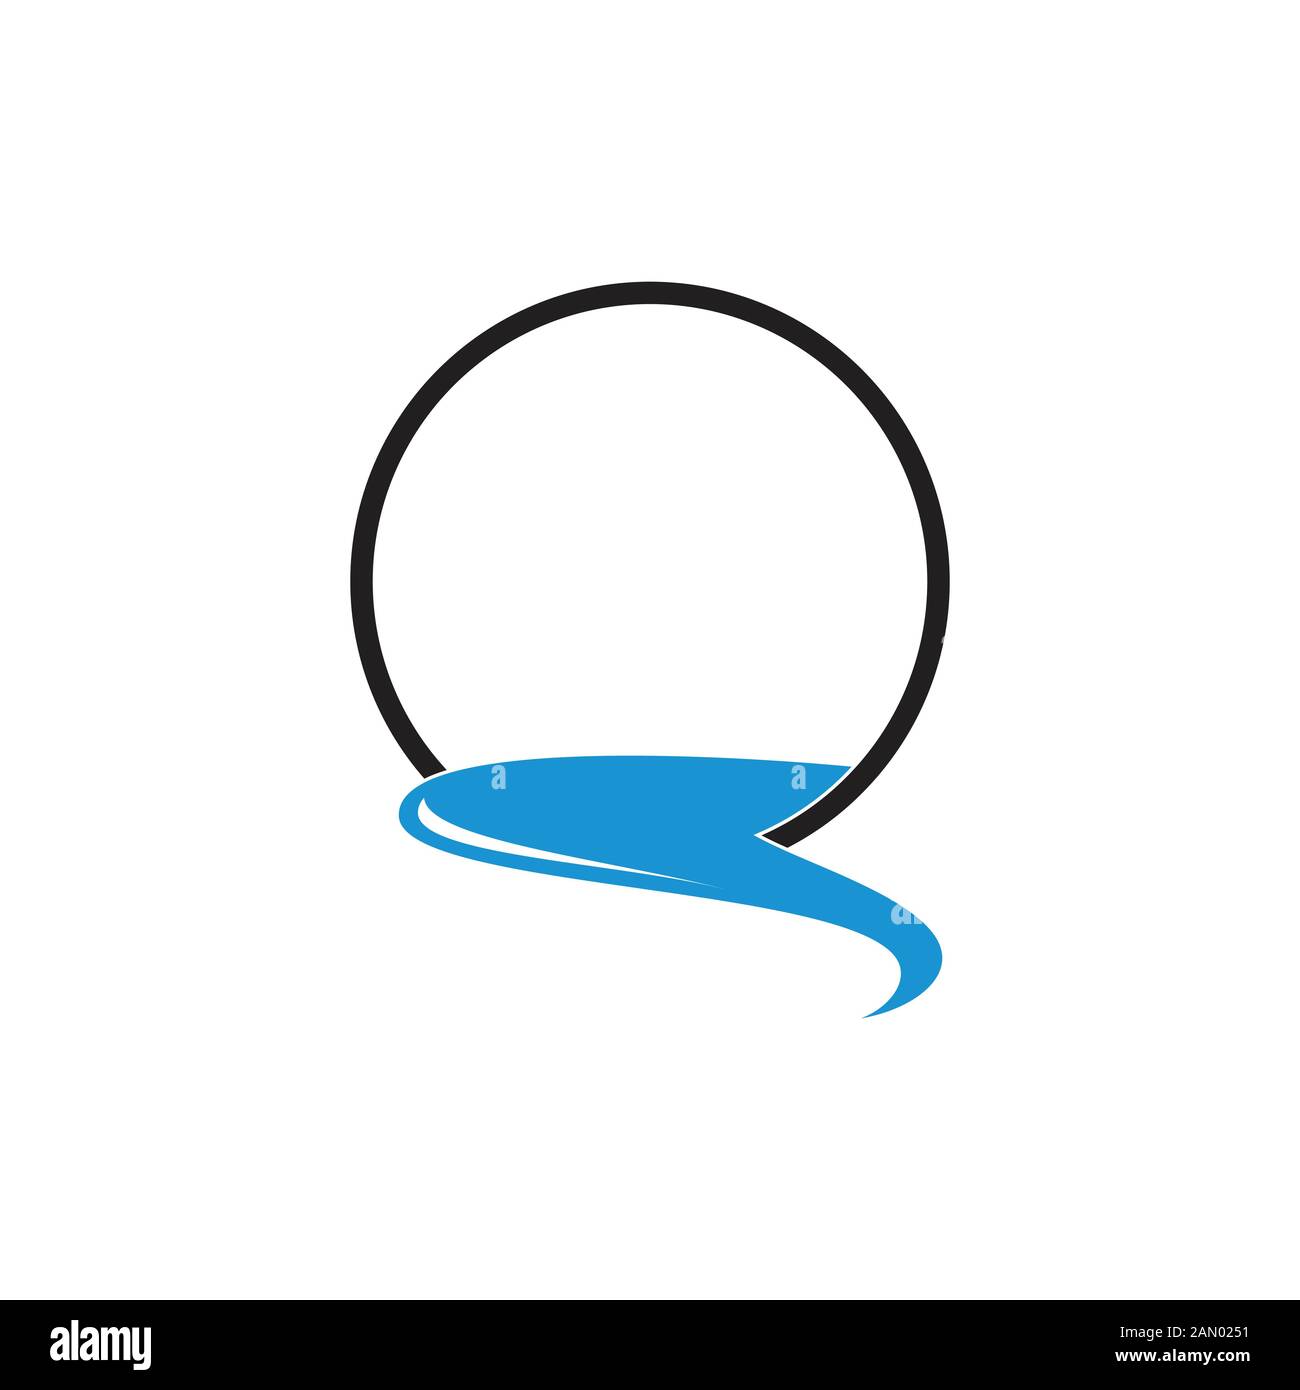 river flows simple circle symbol logo vector Stock Vector